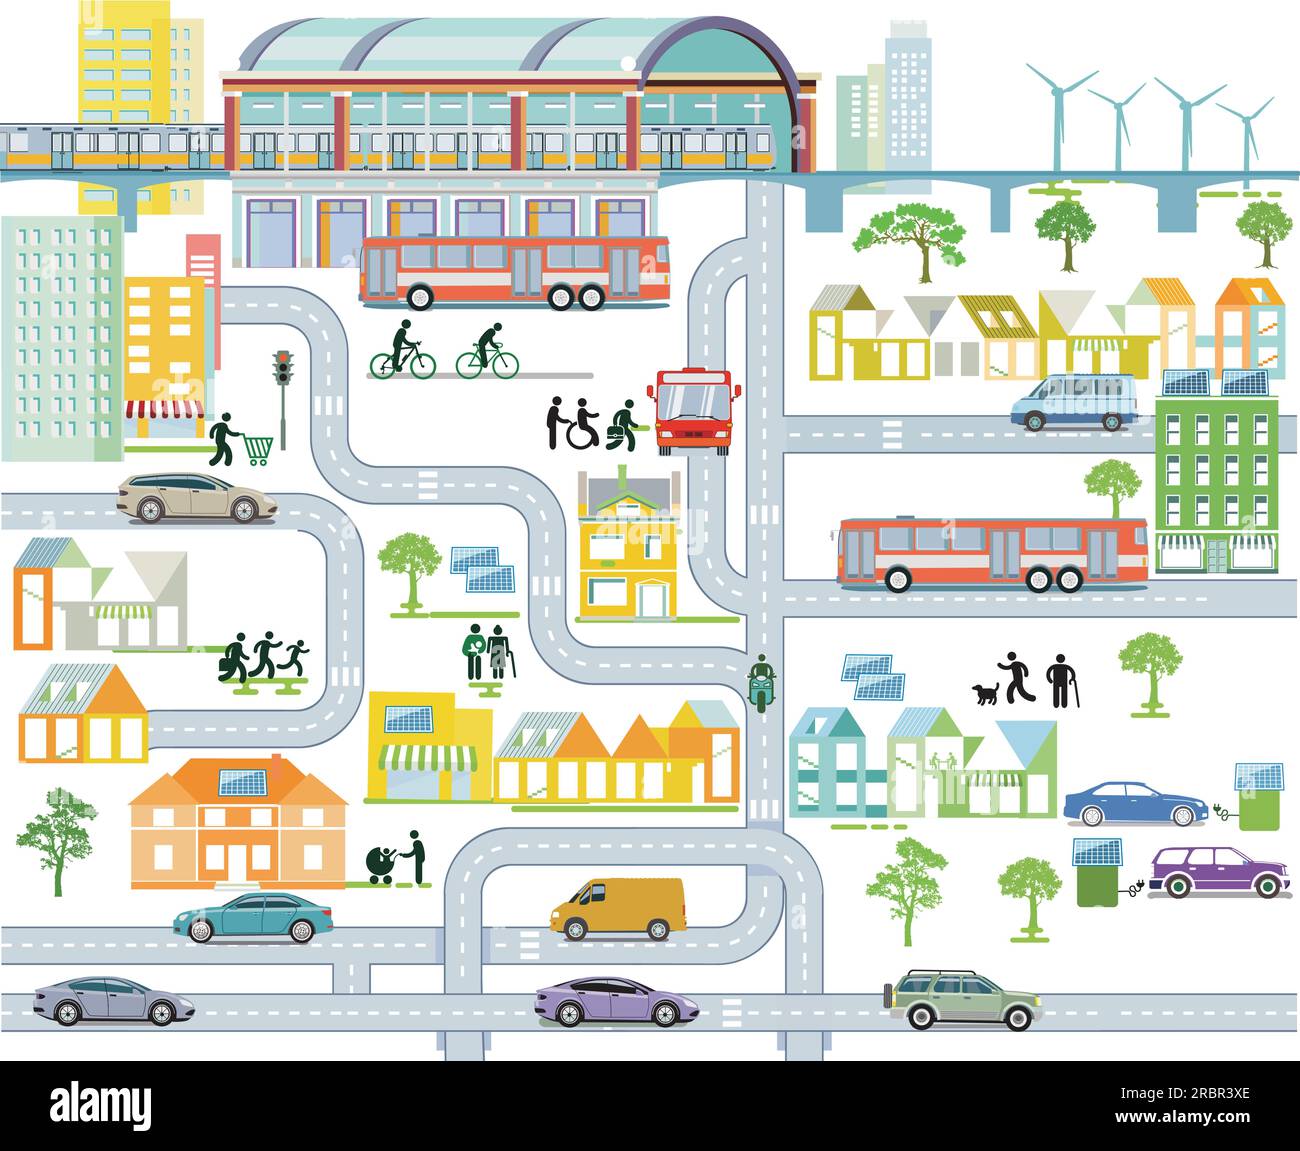 Vue d'ensemble de la ville avec circulation et maisons et gare, illustration d'information Illustration de Vecteur